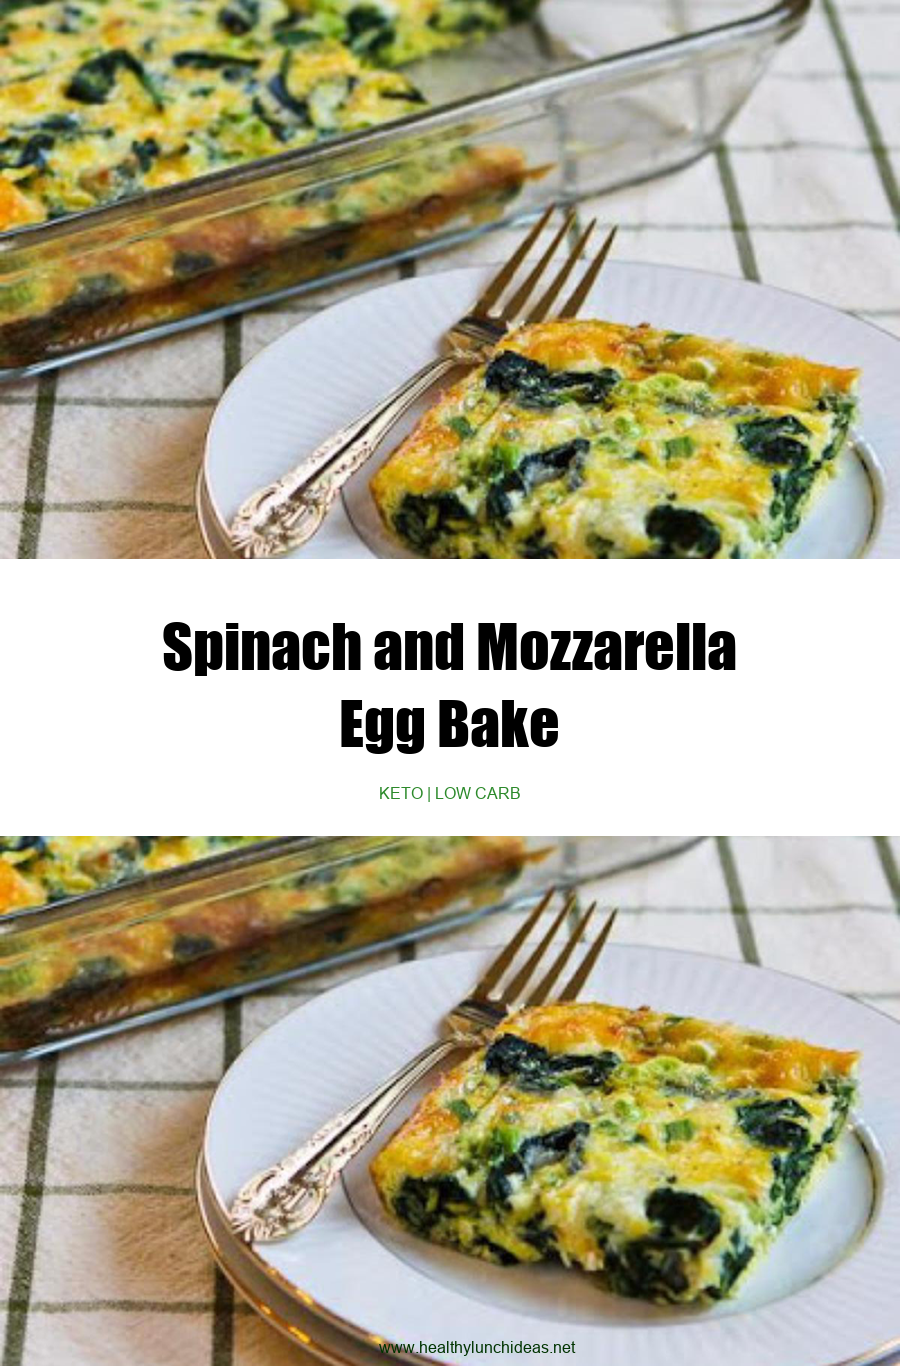 Healthy Recipes: Spinach and Mozzarella Egg Bake Recipe